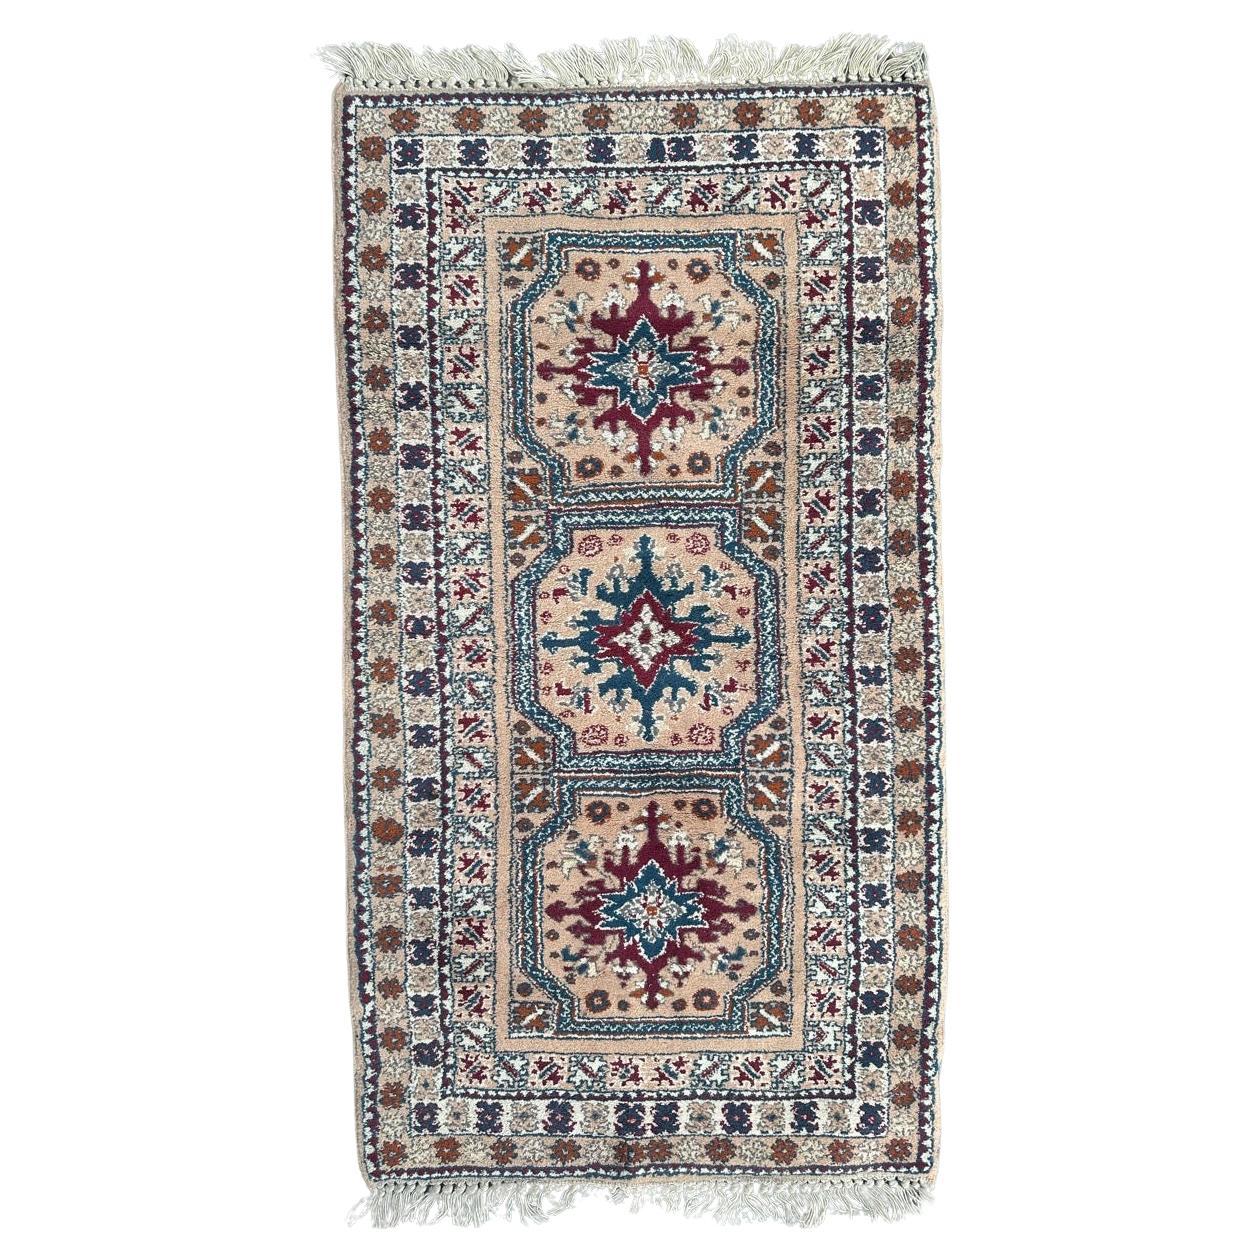 Bobyrug’s pretty vintage Moroccan rug 